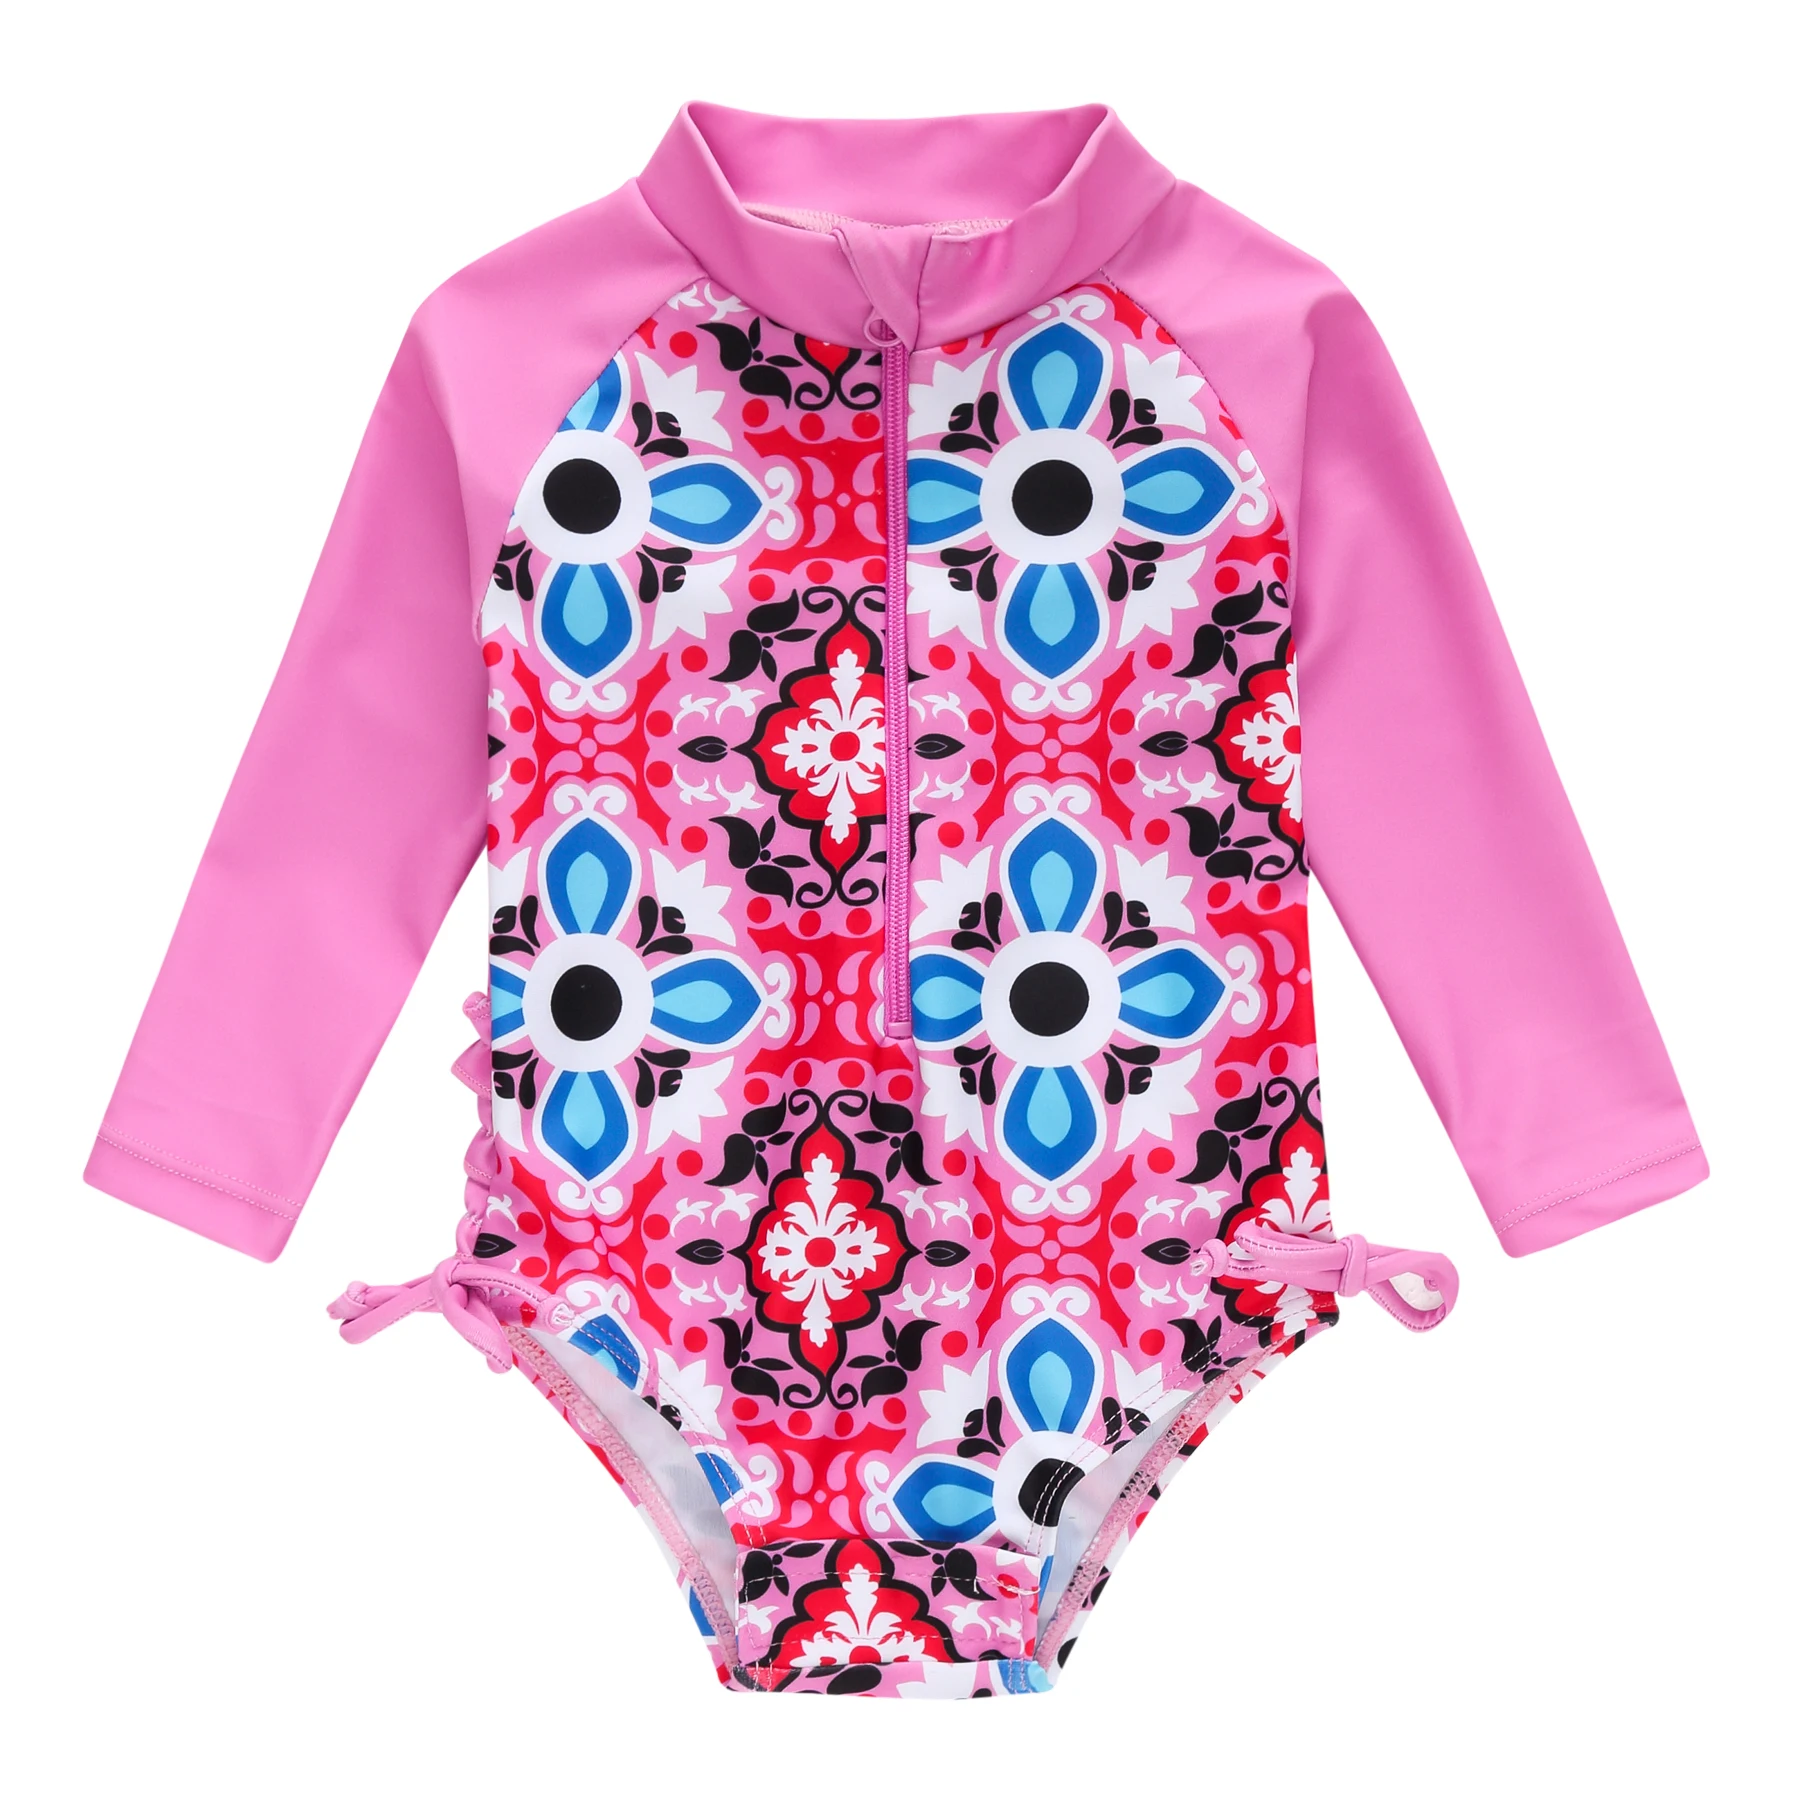 

Kavkas купальник, цельный, летний, круглый вырез, розовый, красный, цветочный принт, одежда для серфинга для малышей, купалник, новинка 2021